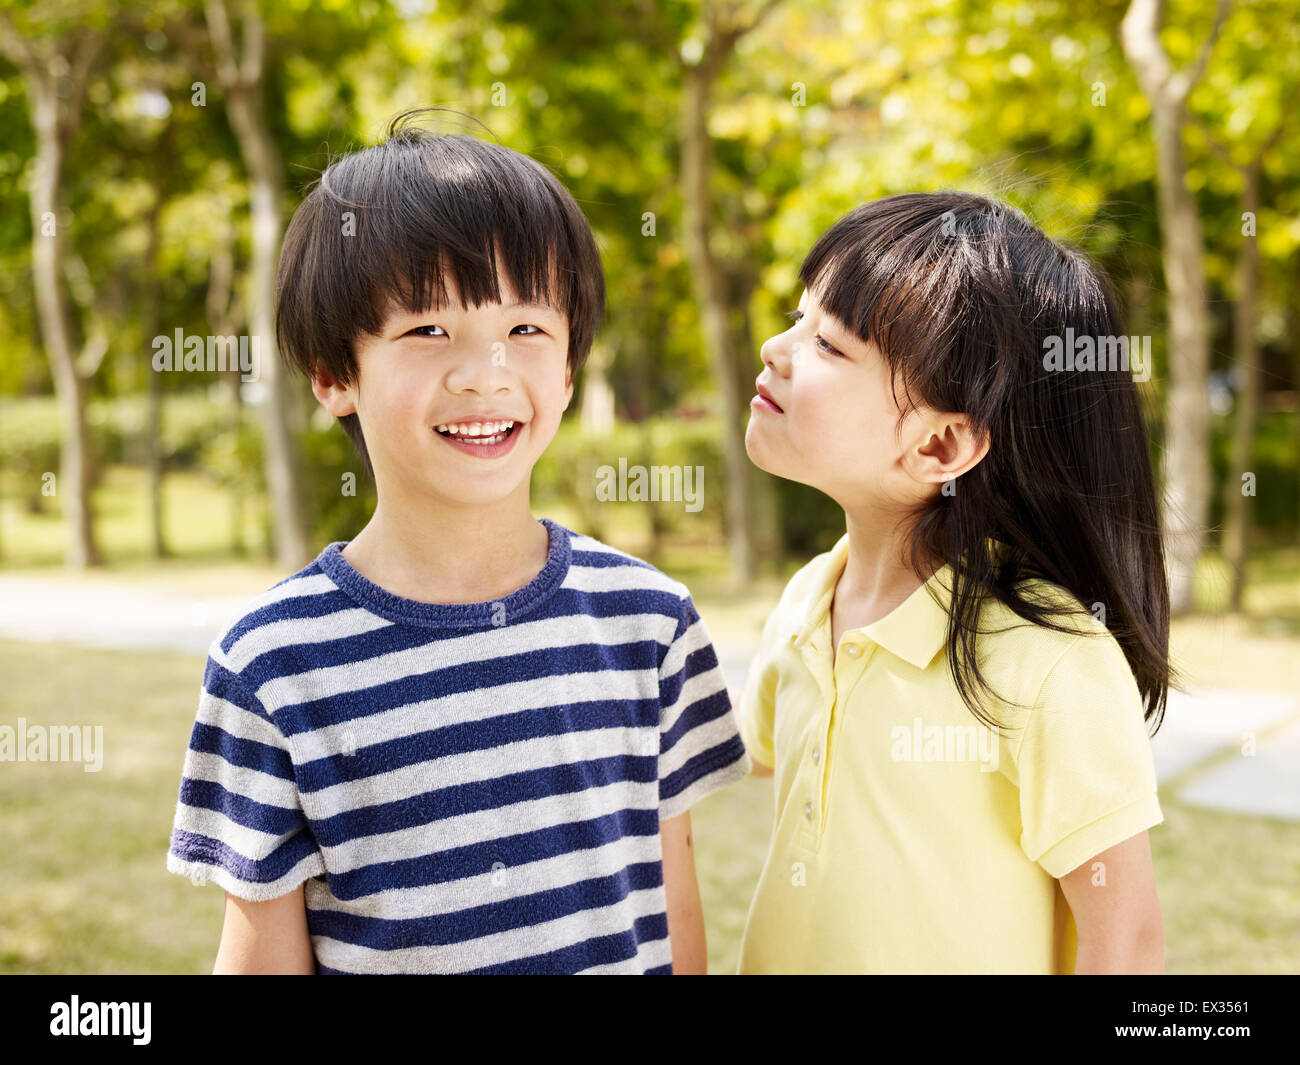 Los niños asiáticos juguetón. Foto de stock